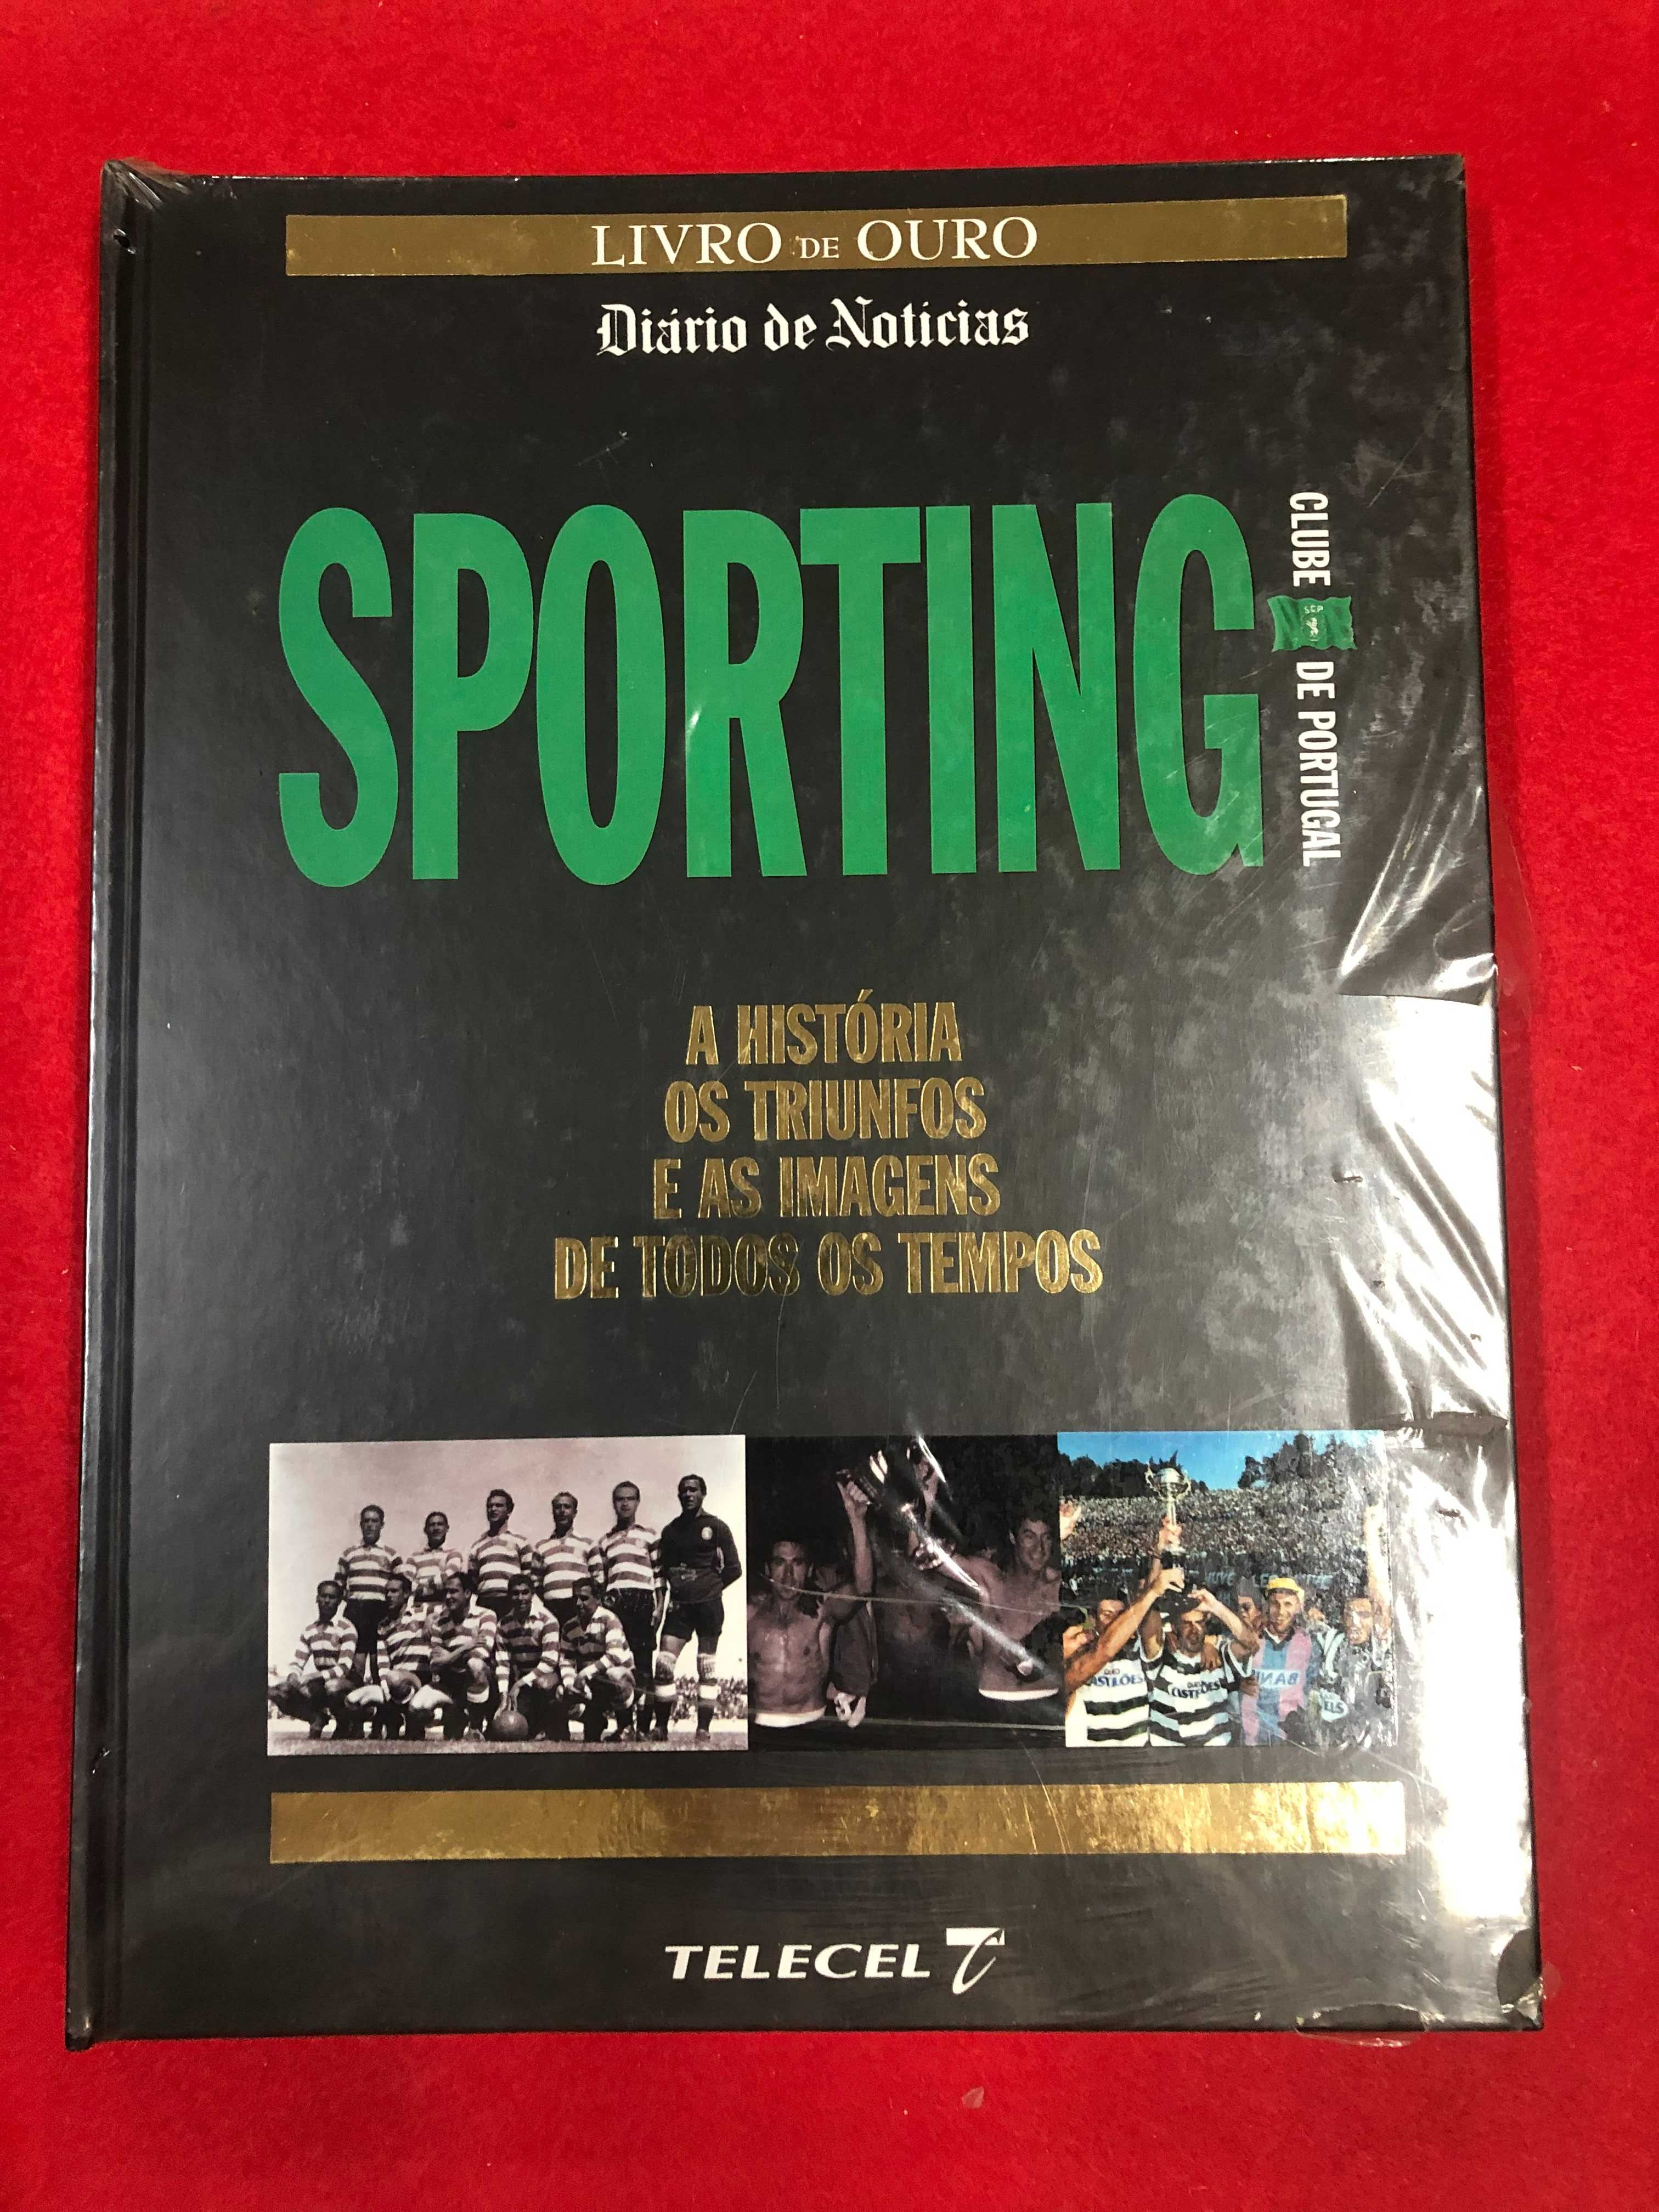 Livro de ouro Diário de Notícias  – Sporting Clube de Portugal